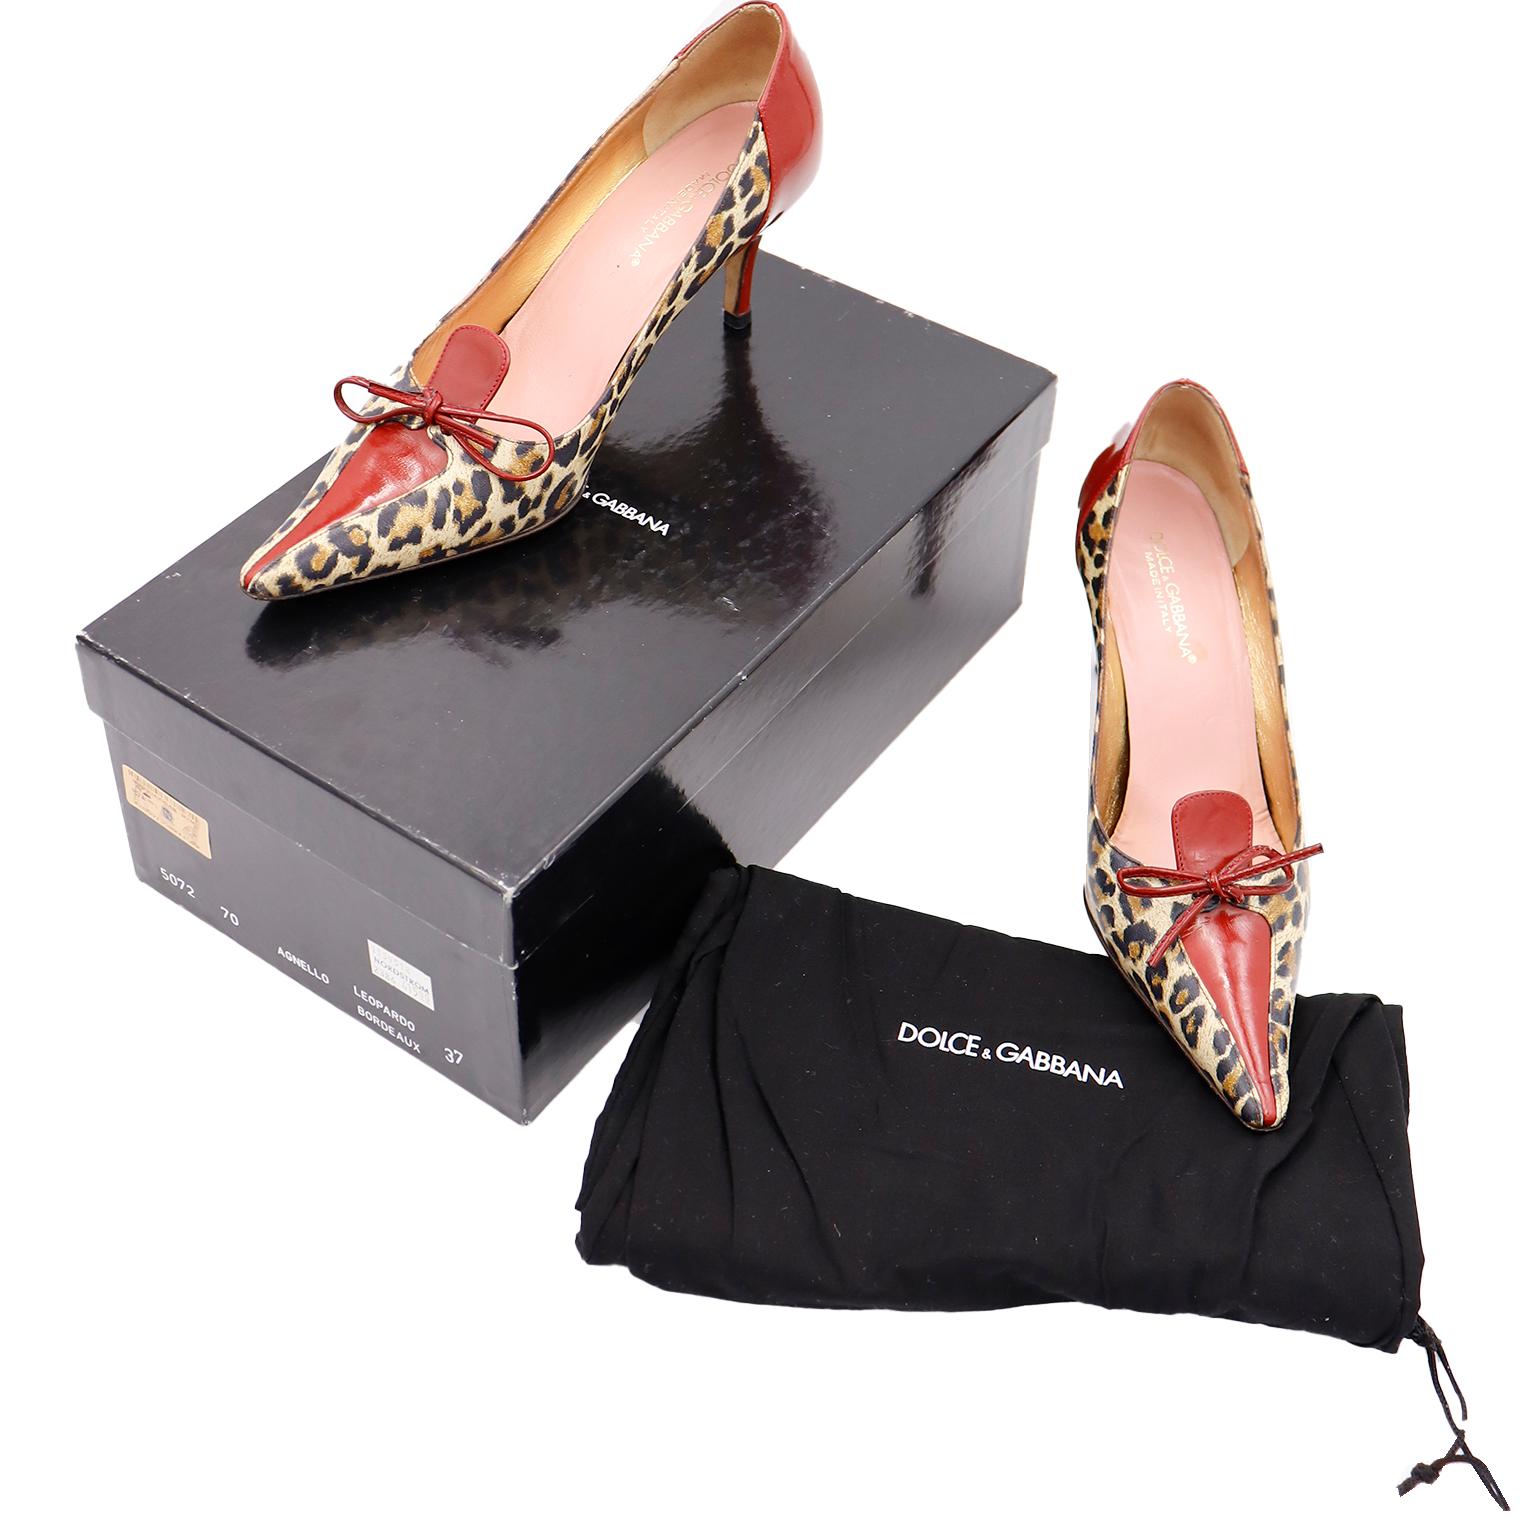 Diese Dolce & Gabbana Lederabsätze mit Leopardenmuster haben kontrastierendes rotes Leder auf der Rückseite, der Ferse, der Zunge/Klappe und der Schleife. Diese Schuhe kommen mit ihrer Originalverpackung und Staubbeutel und sind mit dem Label Dolce